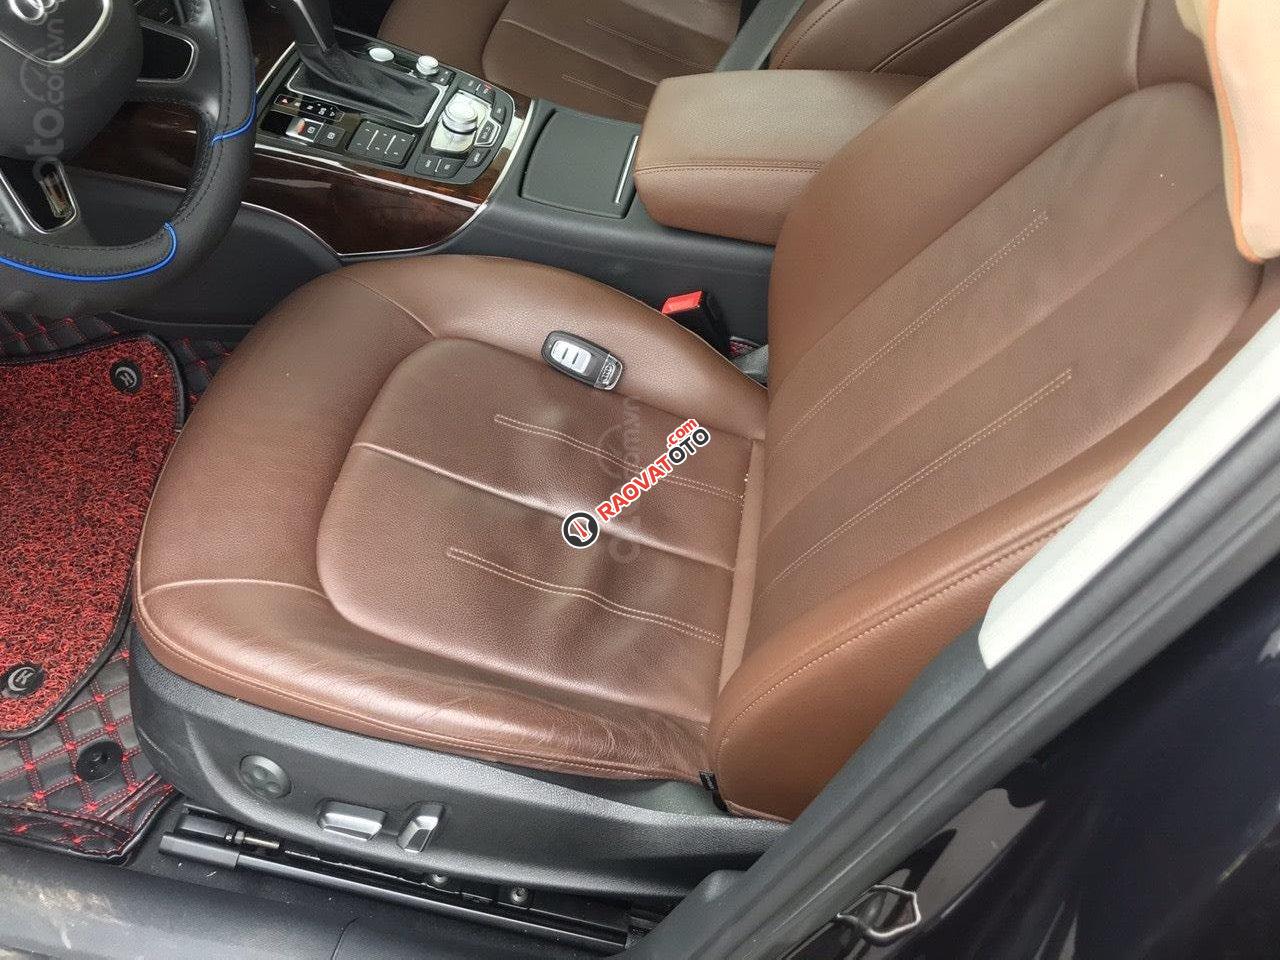 Bán Audi A6 2015 mẫu mới nhất, xe đẹp zin 100% không lỗi bao kiểm tra đâm đụng và ngập nước tại hãng-2